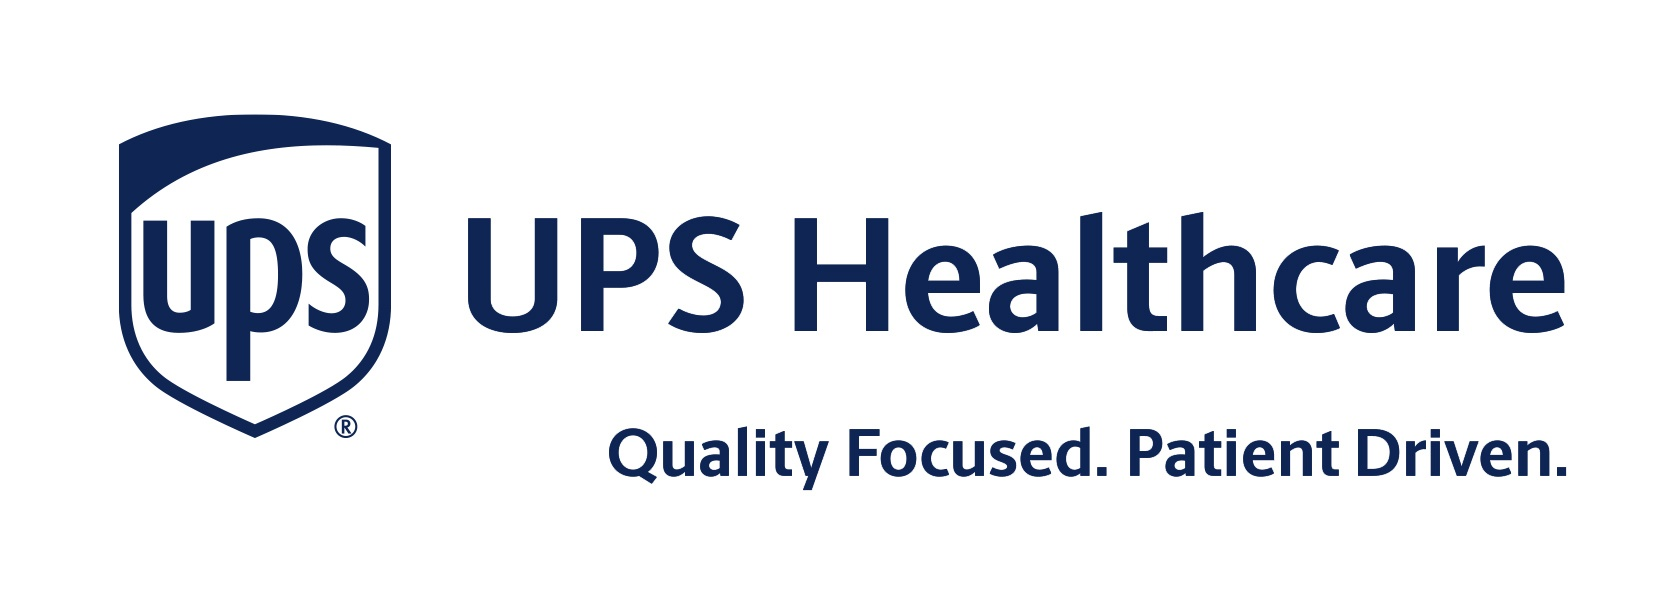 UPS Healthcare stelt Felipe Morgulis aan als nieuwe President Logistiek en Distributie Europa en LATAM